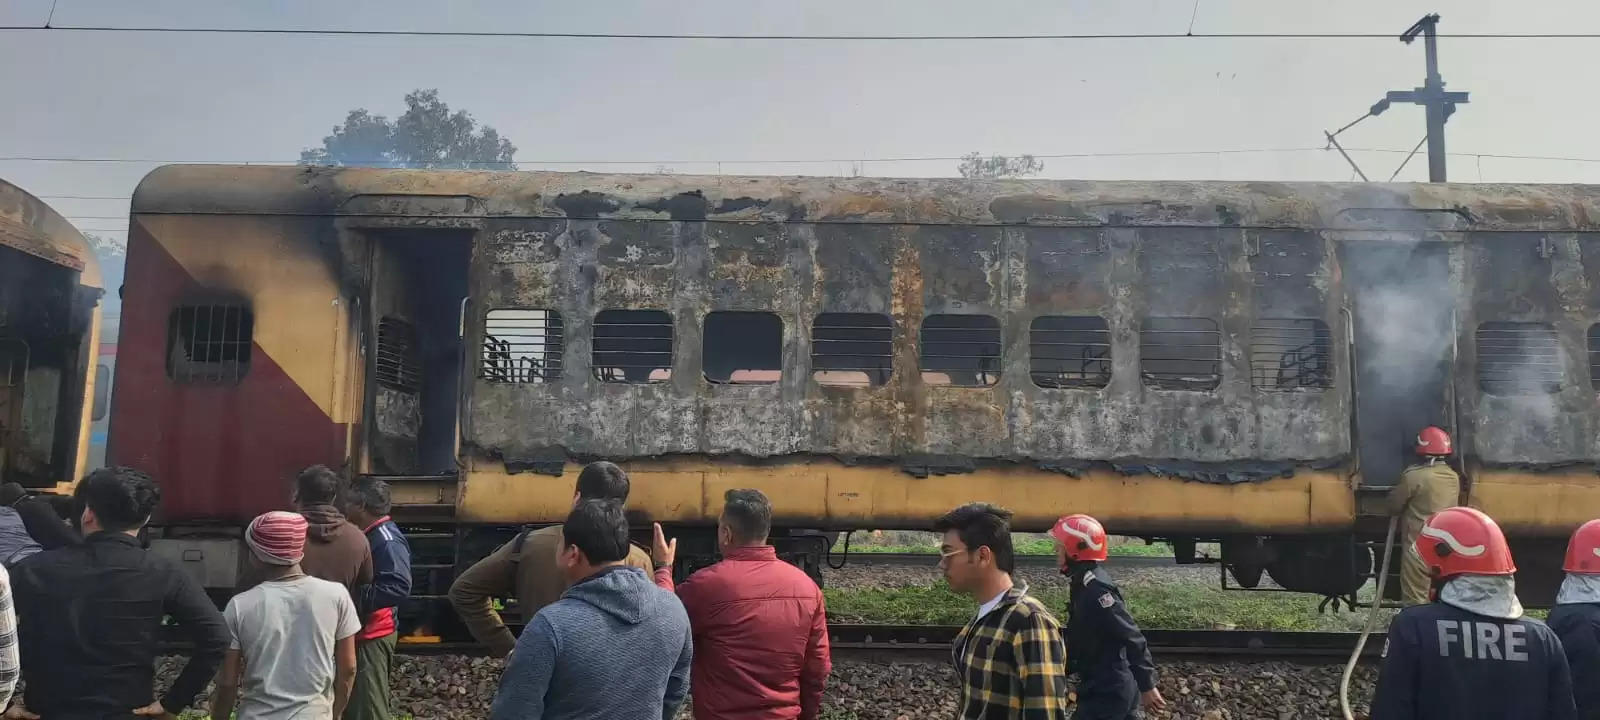 पटेल नगर रेलवे स्टेशन पर ट्रेन के कोच में लगी आग